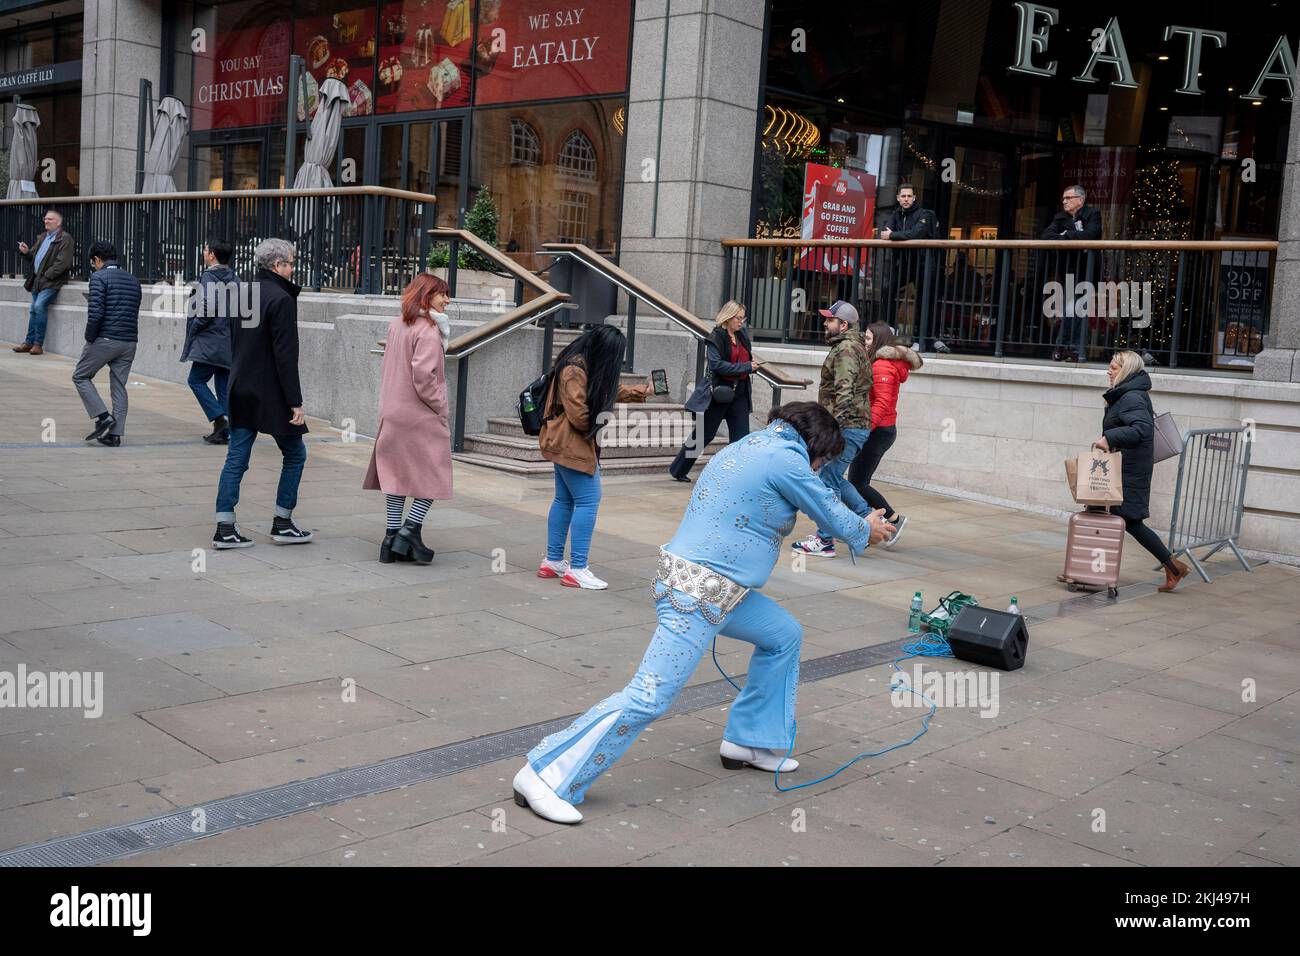 Il 24th novembre 2022, a Londra, in Inghilterra, un atto di tributo simile a quello di Elvis Presley rappresenta il Re davanti al passaggio di pendolari alla stazione di Liverpool Street nella City of London, il quartiere finanziario della capitale. Foto Stock